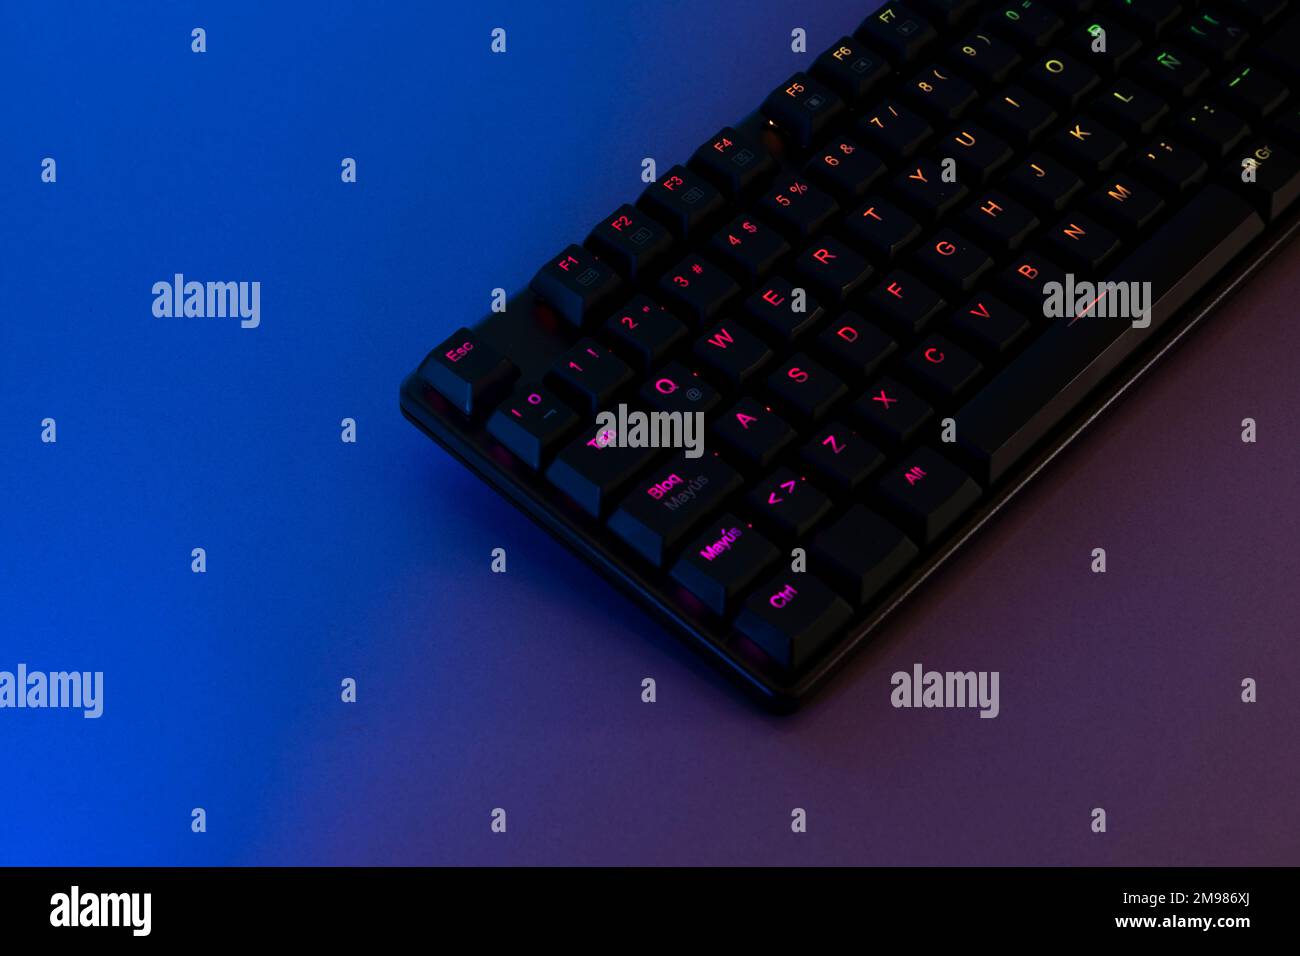 rgb-beleuchtete Spieletastatur auf einem Schreibtisch mit blauer und lilafarbener Beleuchtung. Stockfoto